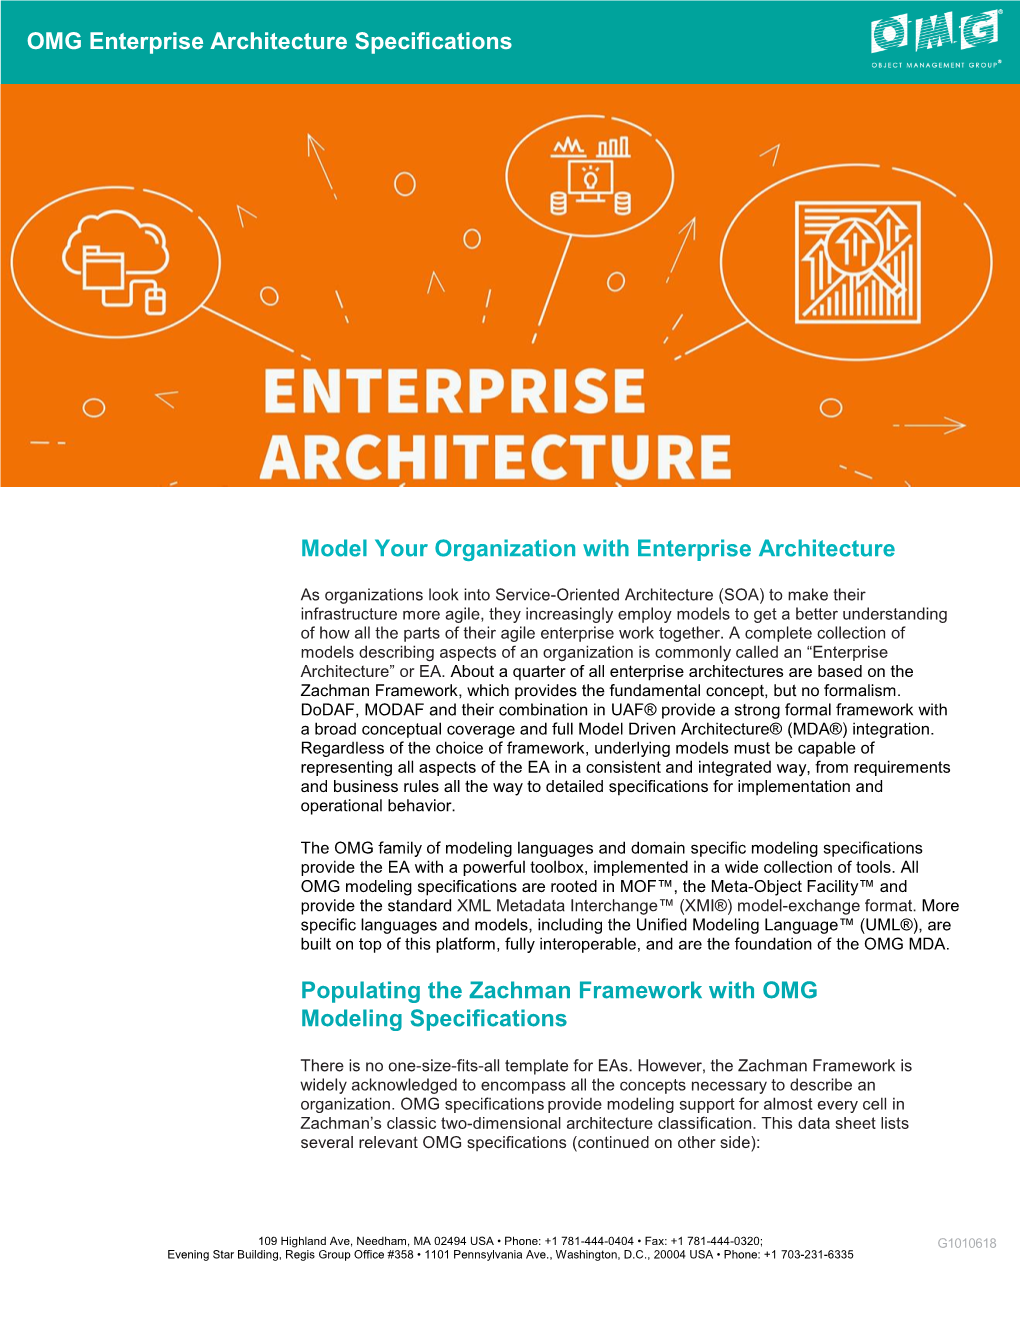 Enterprise Architecture Specifications